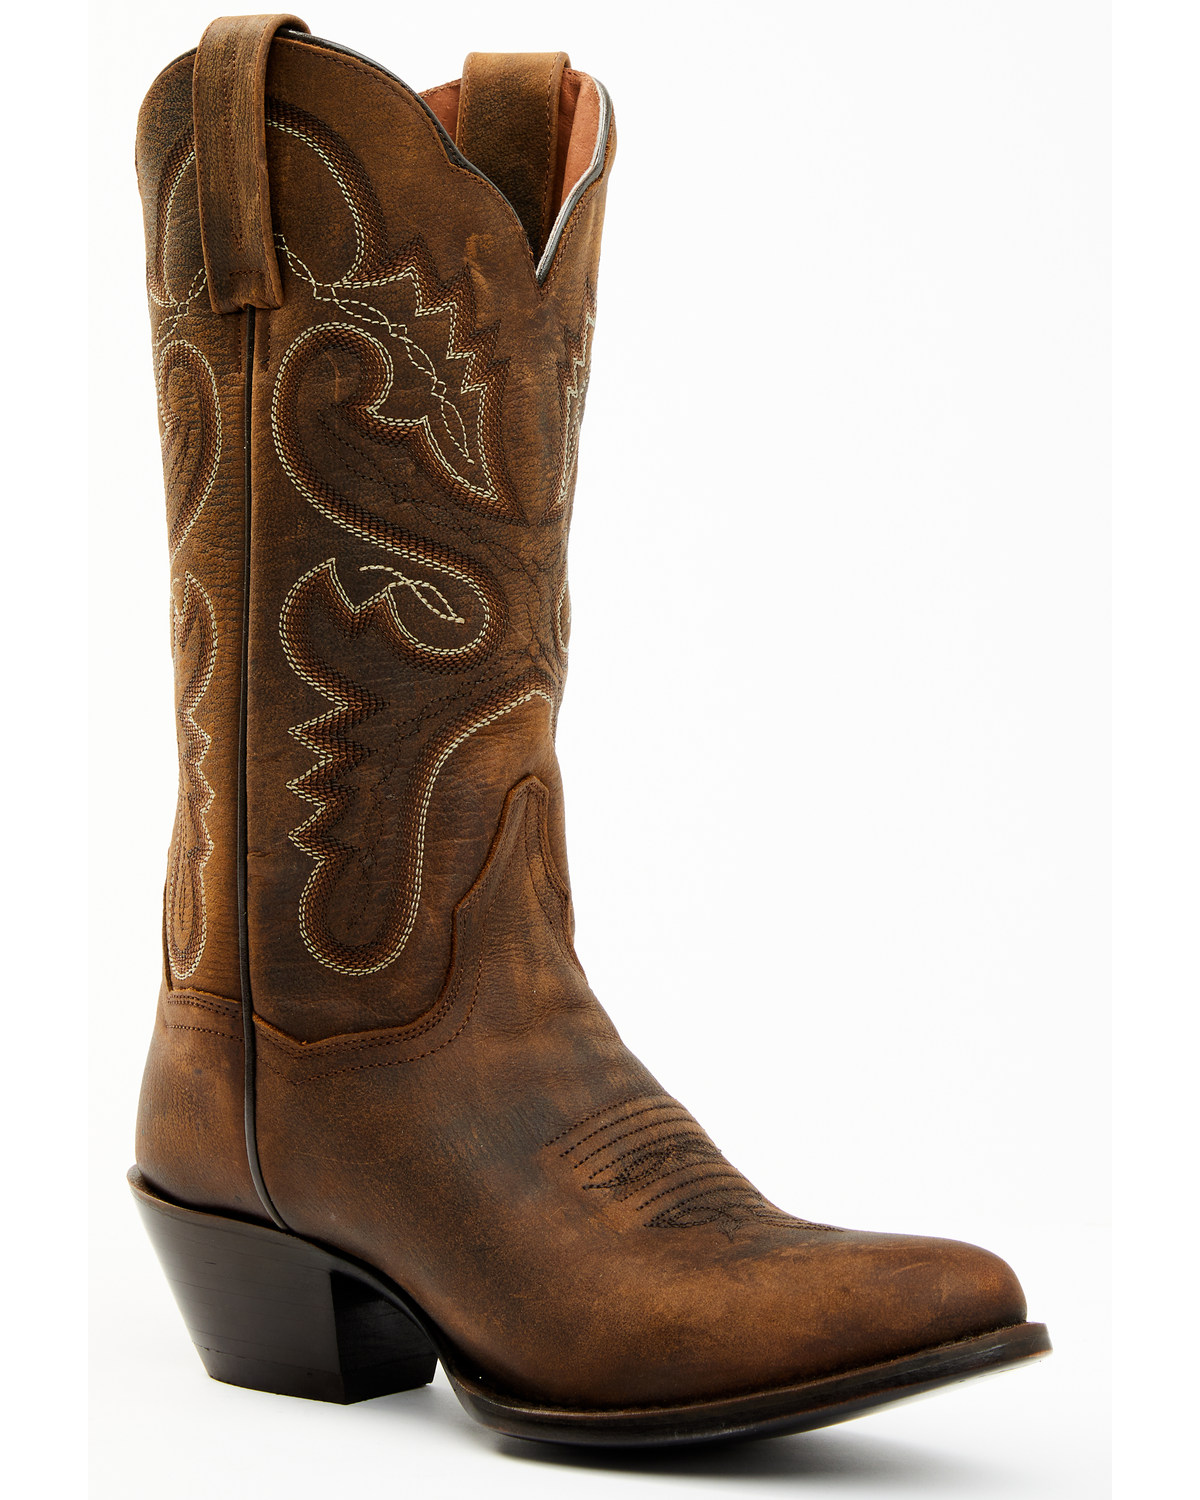 Dan Post Women's 12" Western Boots